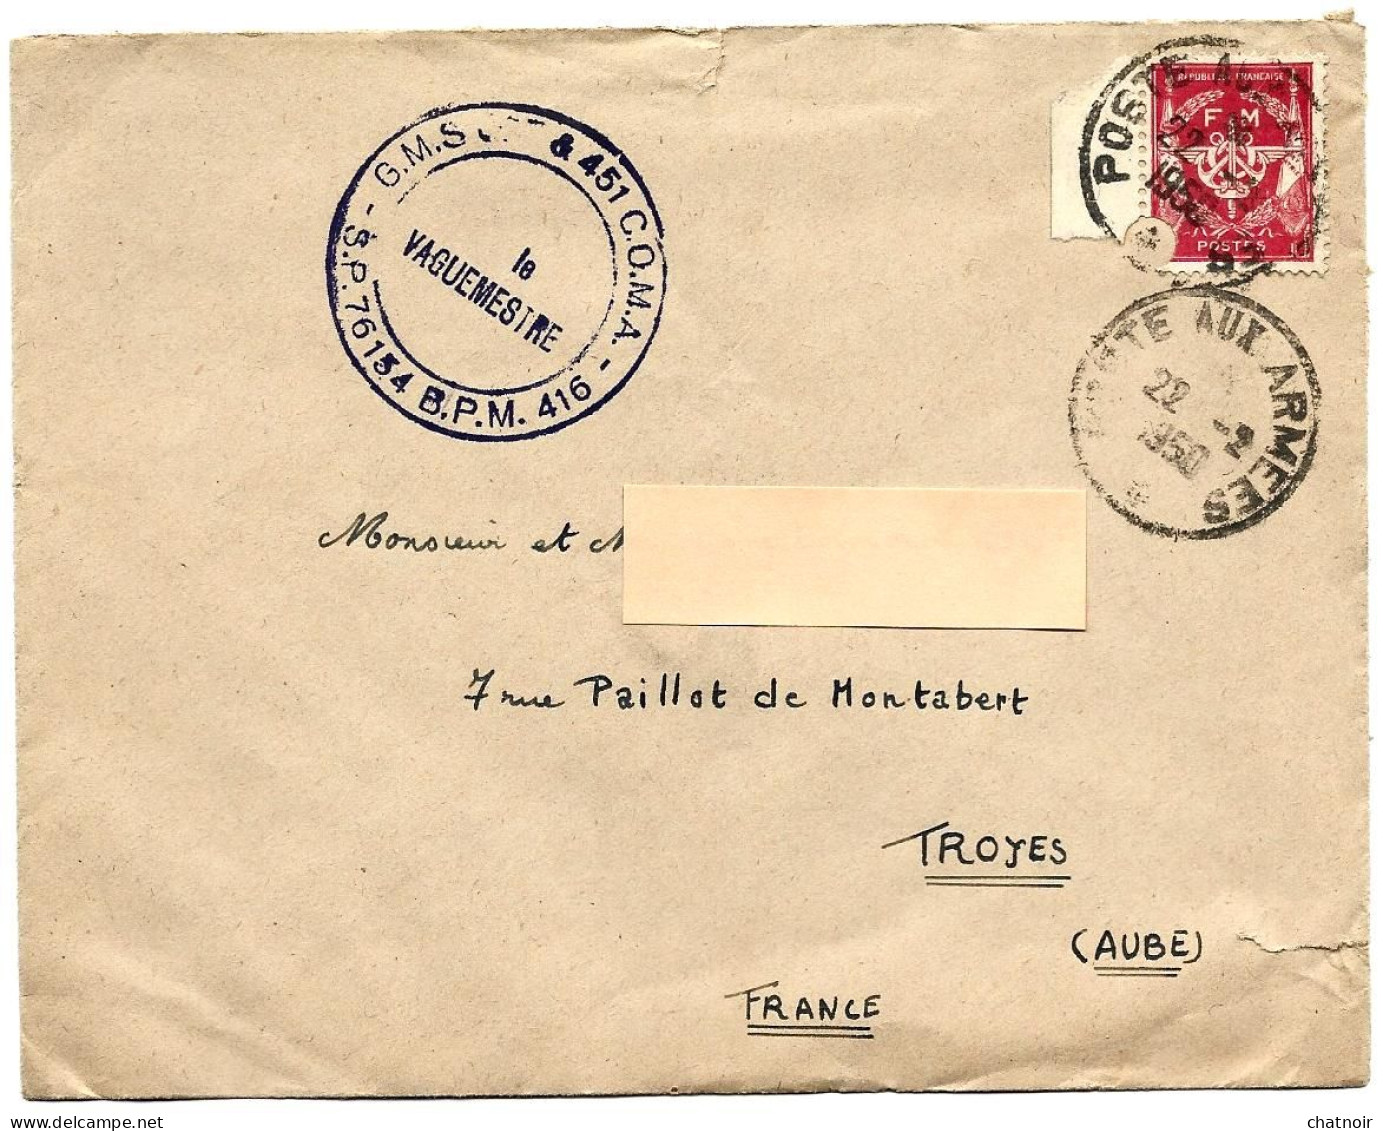 Envel  FM  Oblit  Poste Aux Armees  1950  Cachet " Le Vaguemestre ...SP 76154  BPM 416 " - Timbres De Franchise Militaire